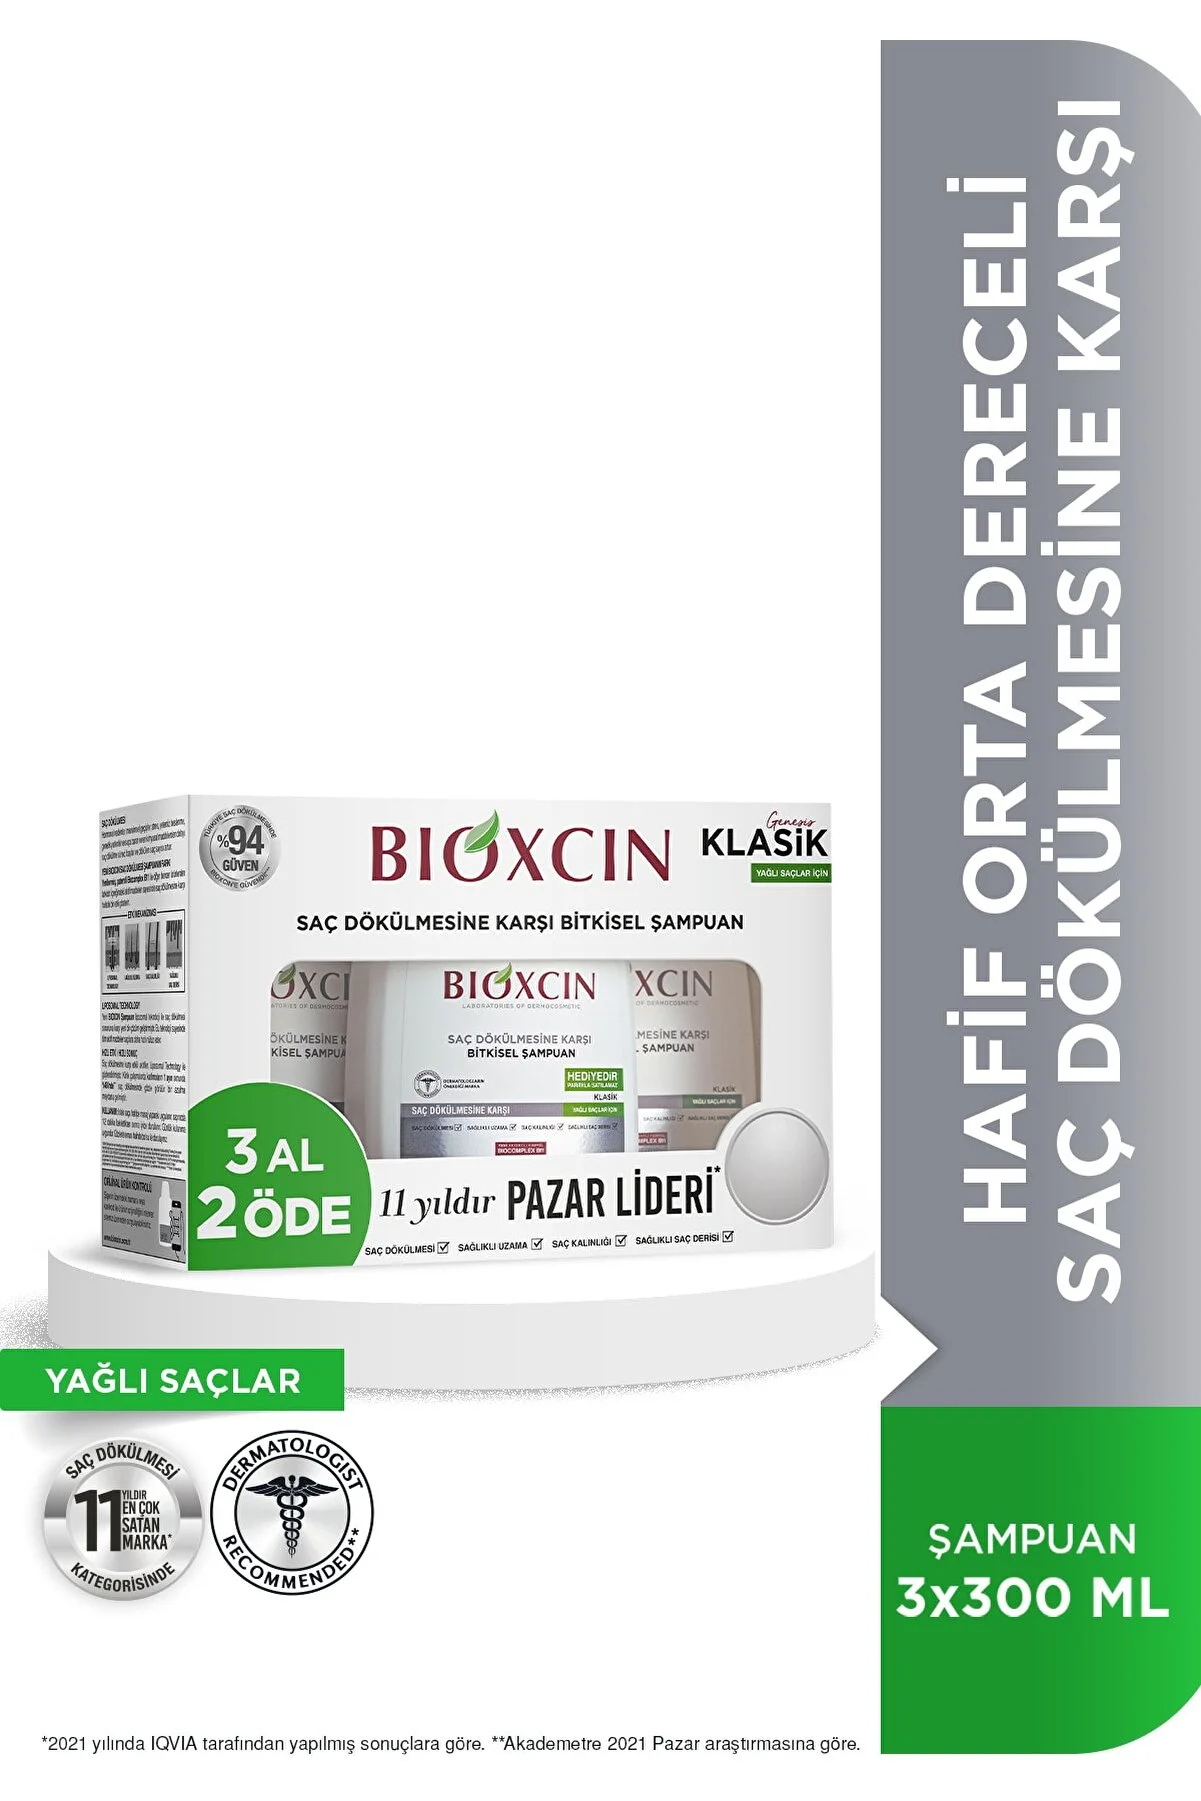 Bioxcin Genesis 3 Al 2 Öde Yağlı Saçlar İçin Şampuan - Bioxcin